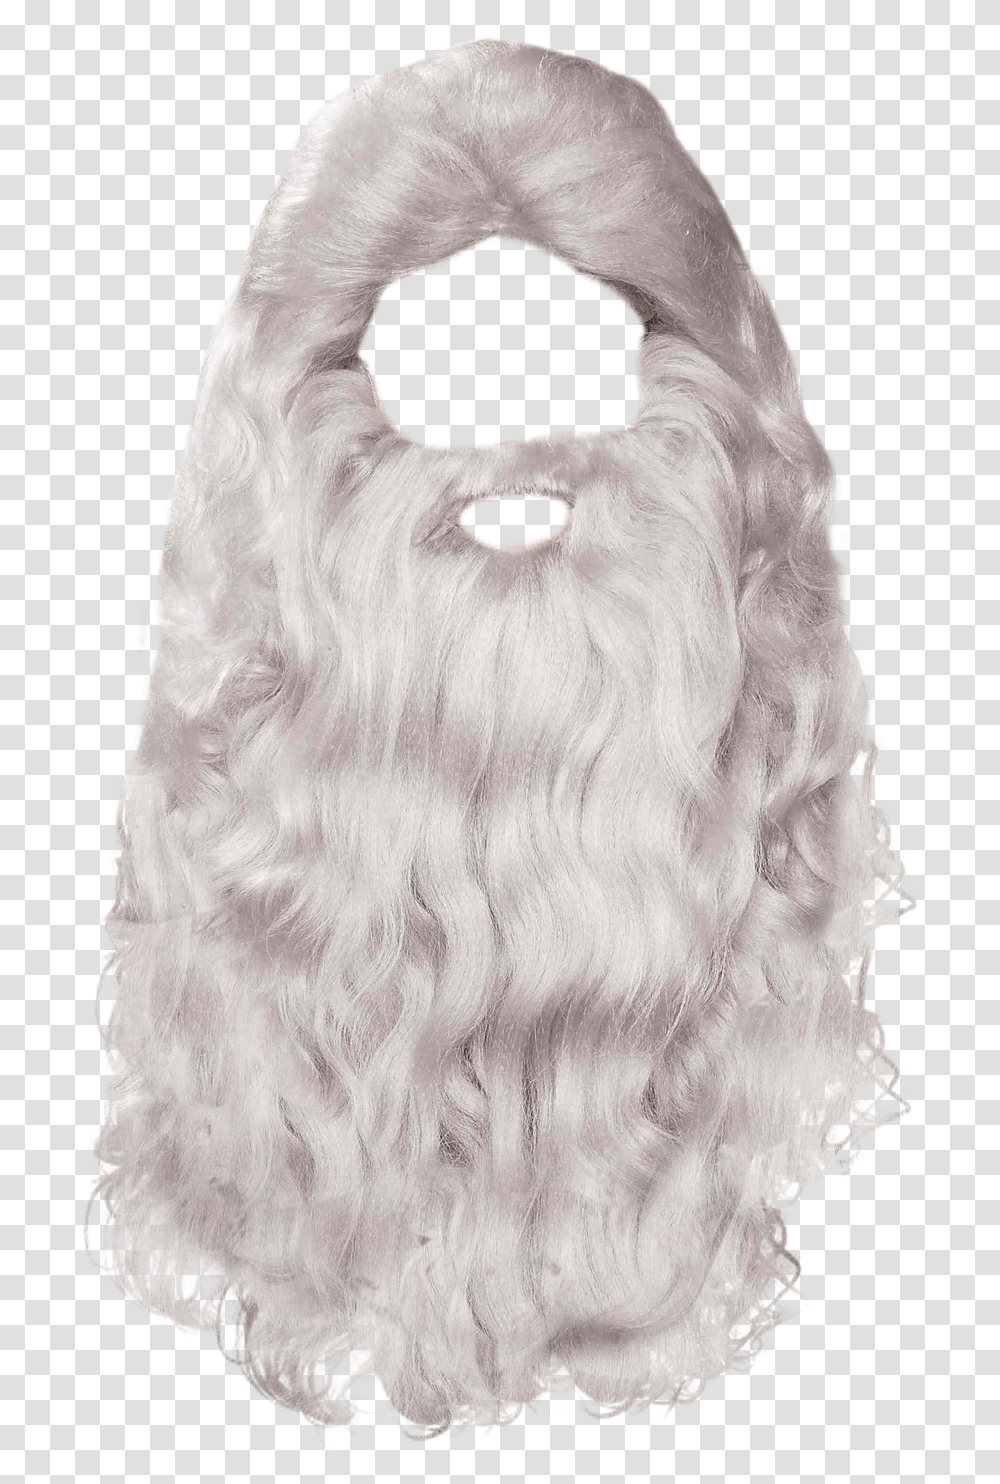 Gray Beard & Free Beardpng Images Christmas Beard, Cushion, Pillow, Dog, Pet Transparent Png